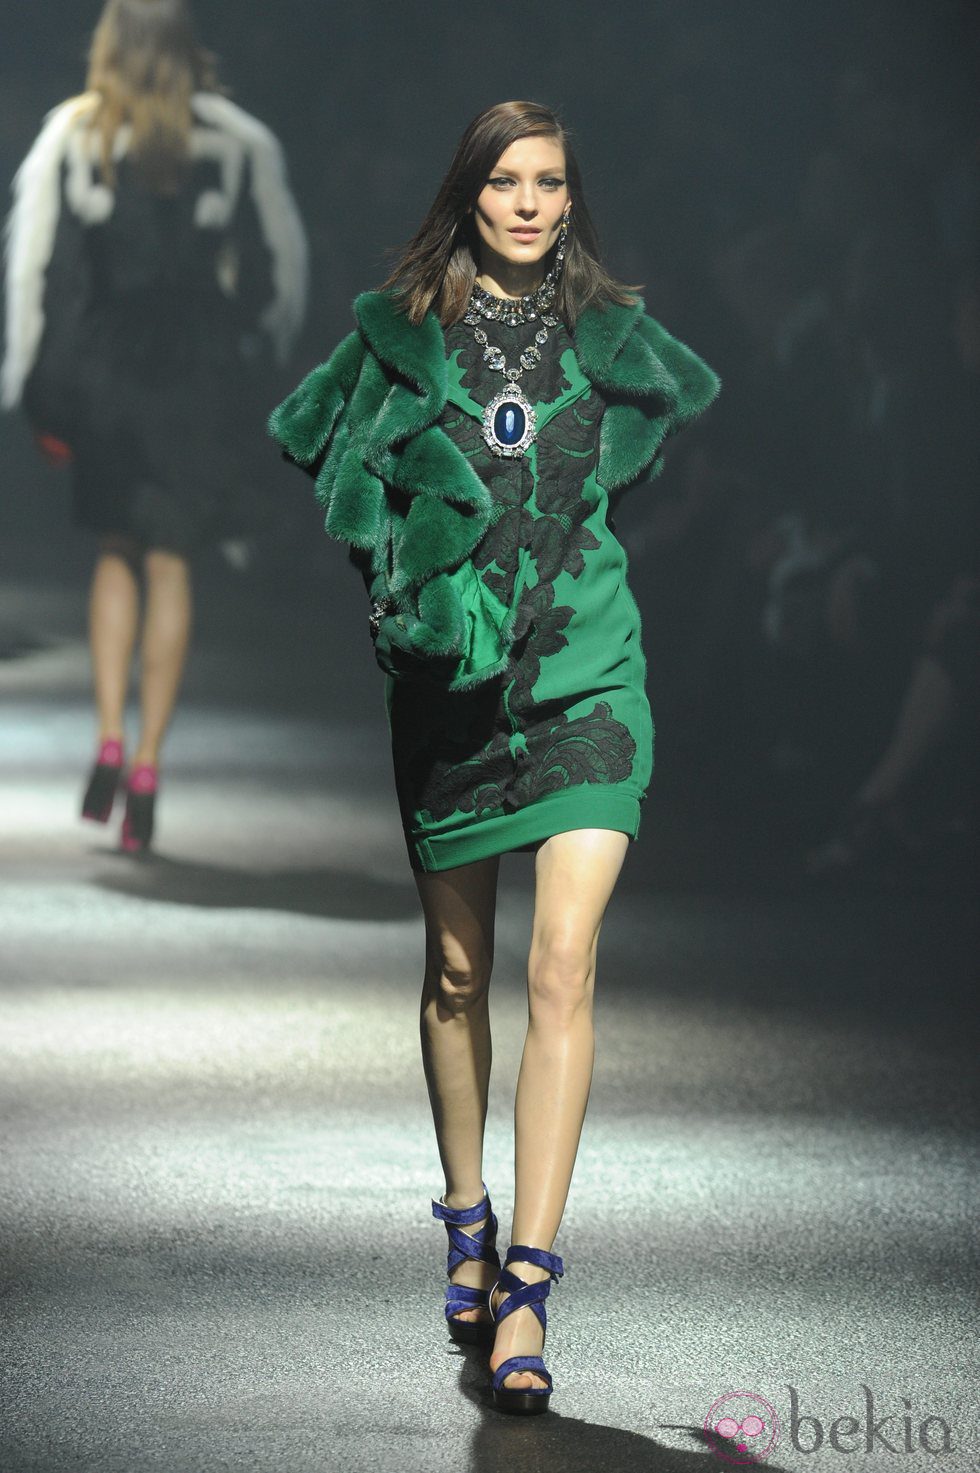 Vestido verde con encaje negro de Lanvin en la París Fashion Week